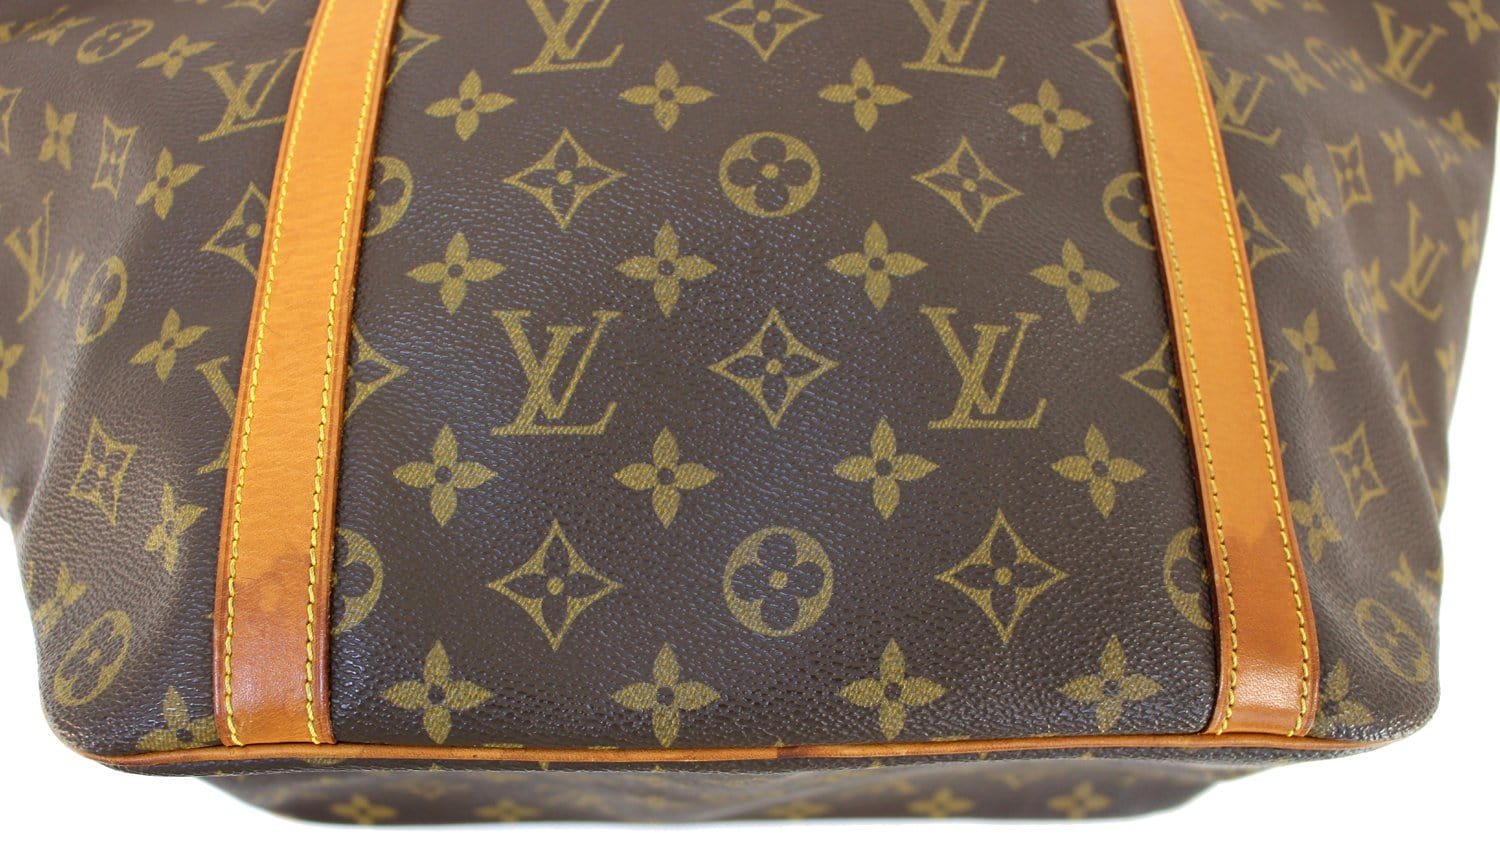 Vintage Louis Vuitton Sac Shopping 48 Monogram Tote 8BW3B4H 051123